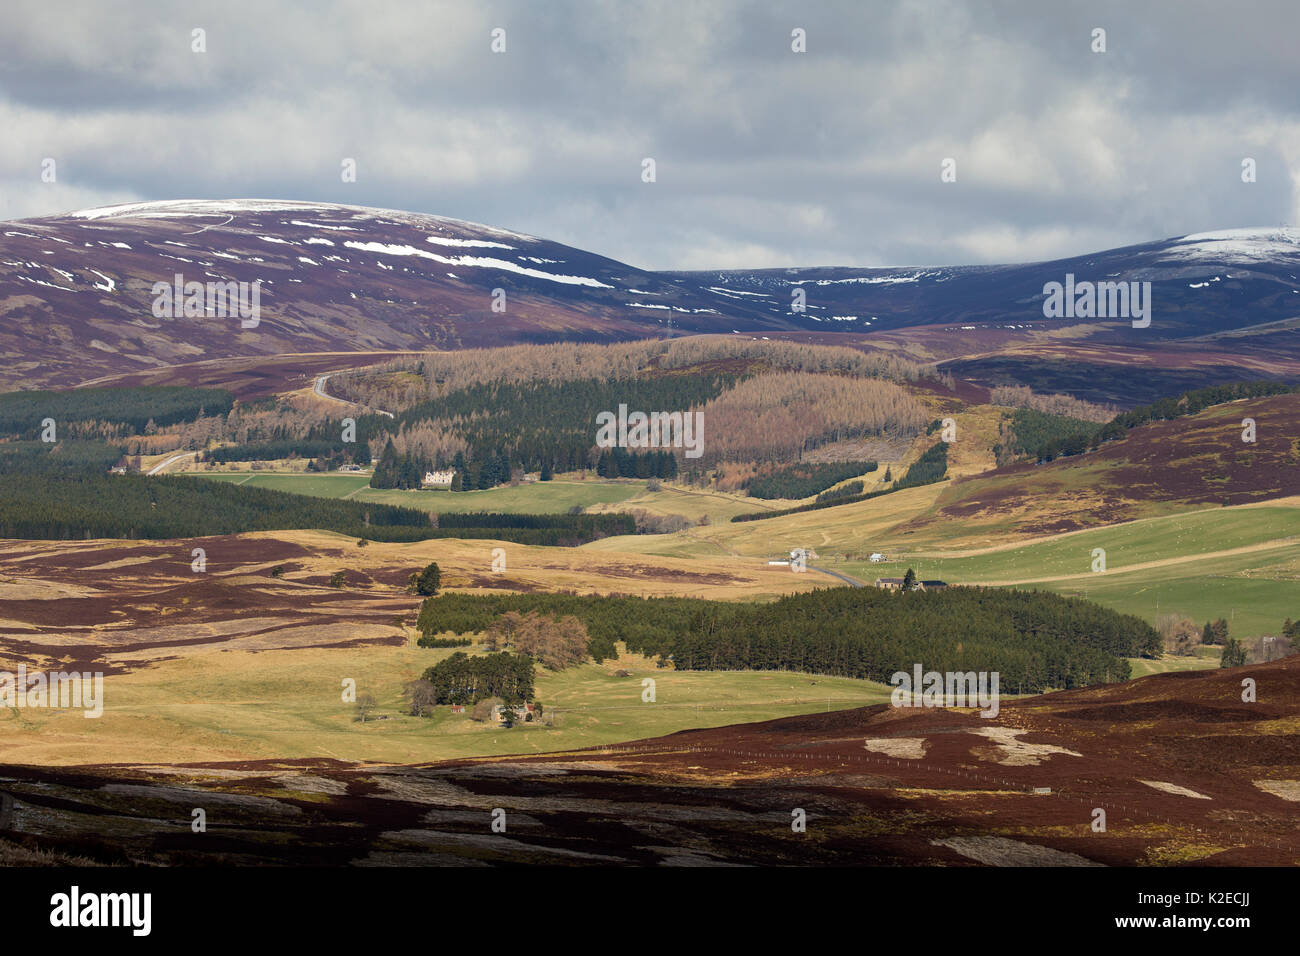 Flickenteppich von Heideland, kommerzielle Forstwirtschaft und Schafe weiden auf Moorhühner schießen Immobilien, Glenlivet, Cairngorms National Park, Schottland, UK, April 2016. Stockfoto